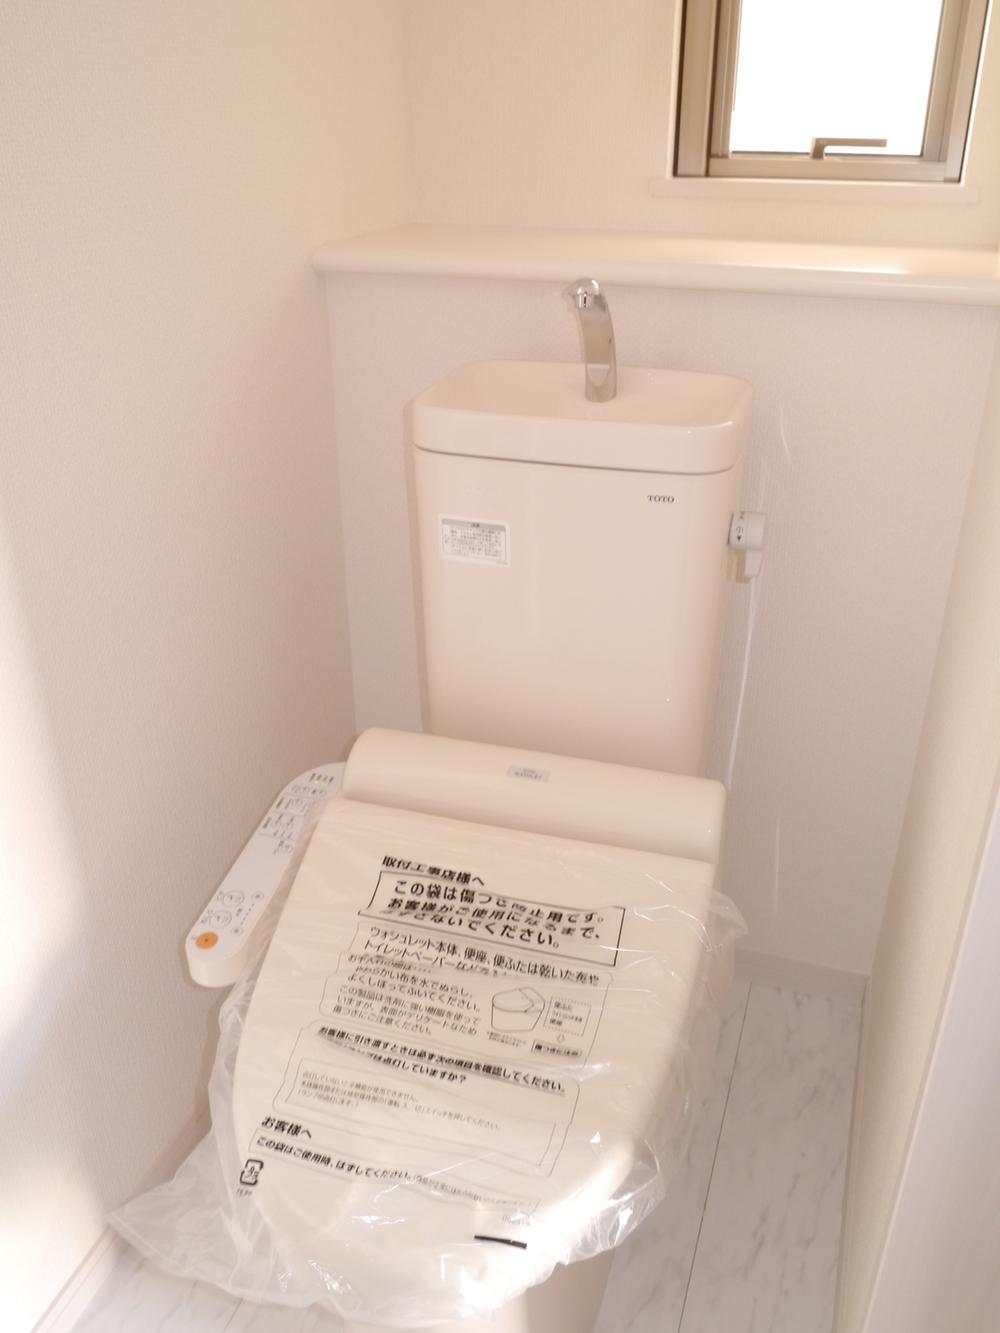 Toilet. Indoor (December 7, 2013) Shooting First floor toilet